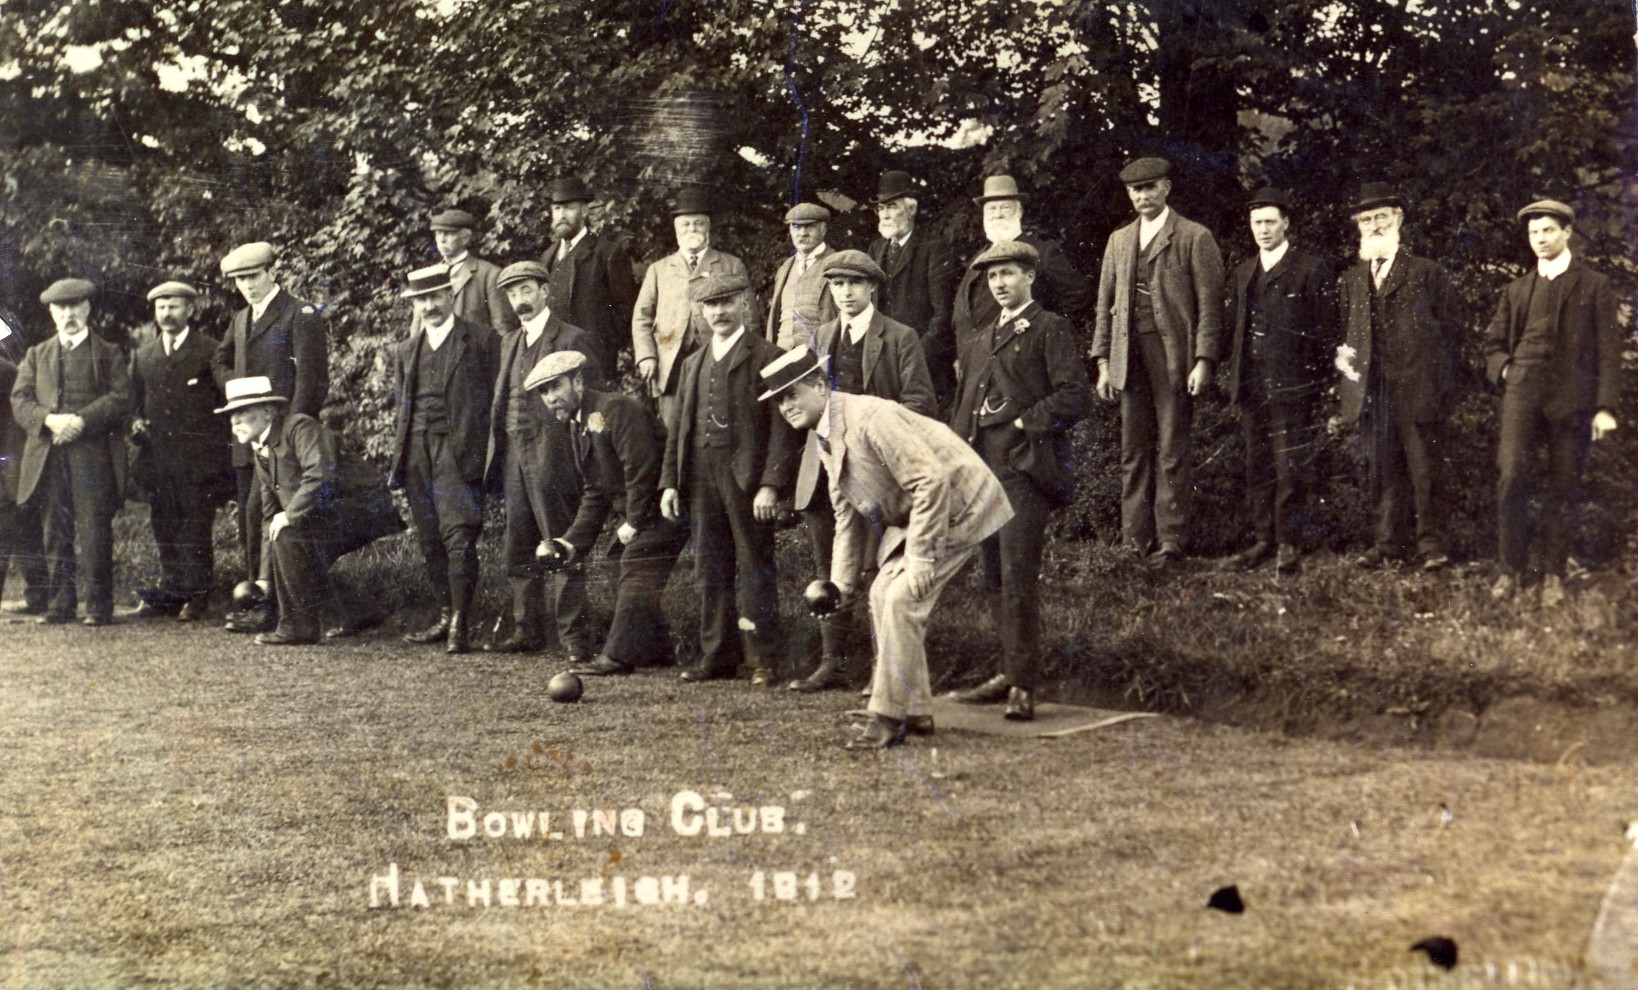 Bowling club 1912 in Hatherleigh